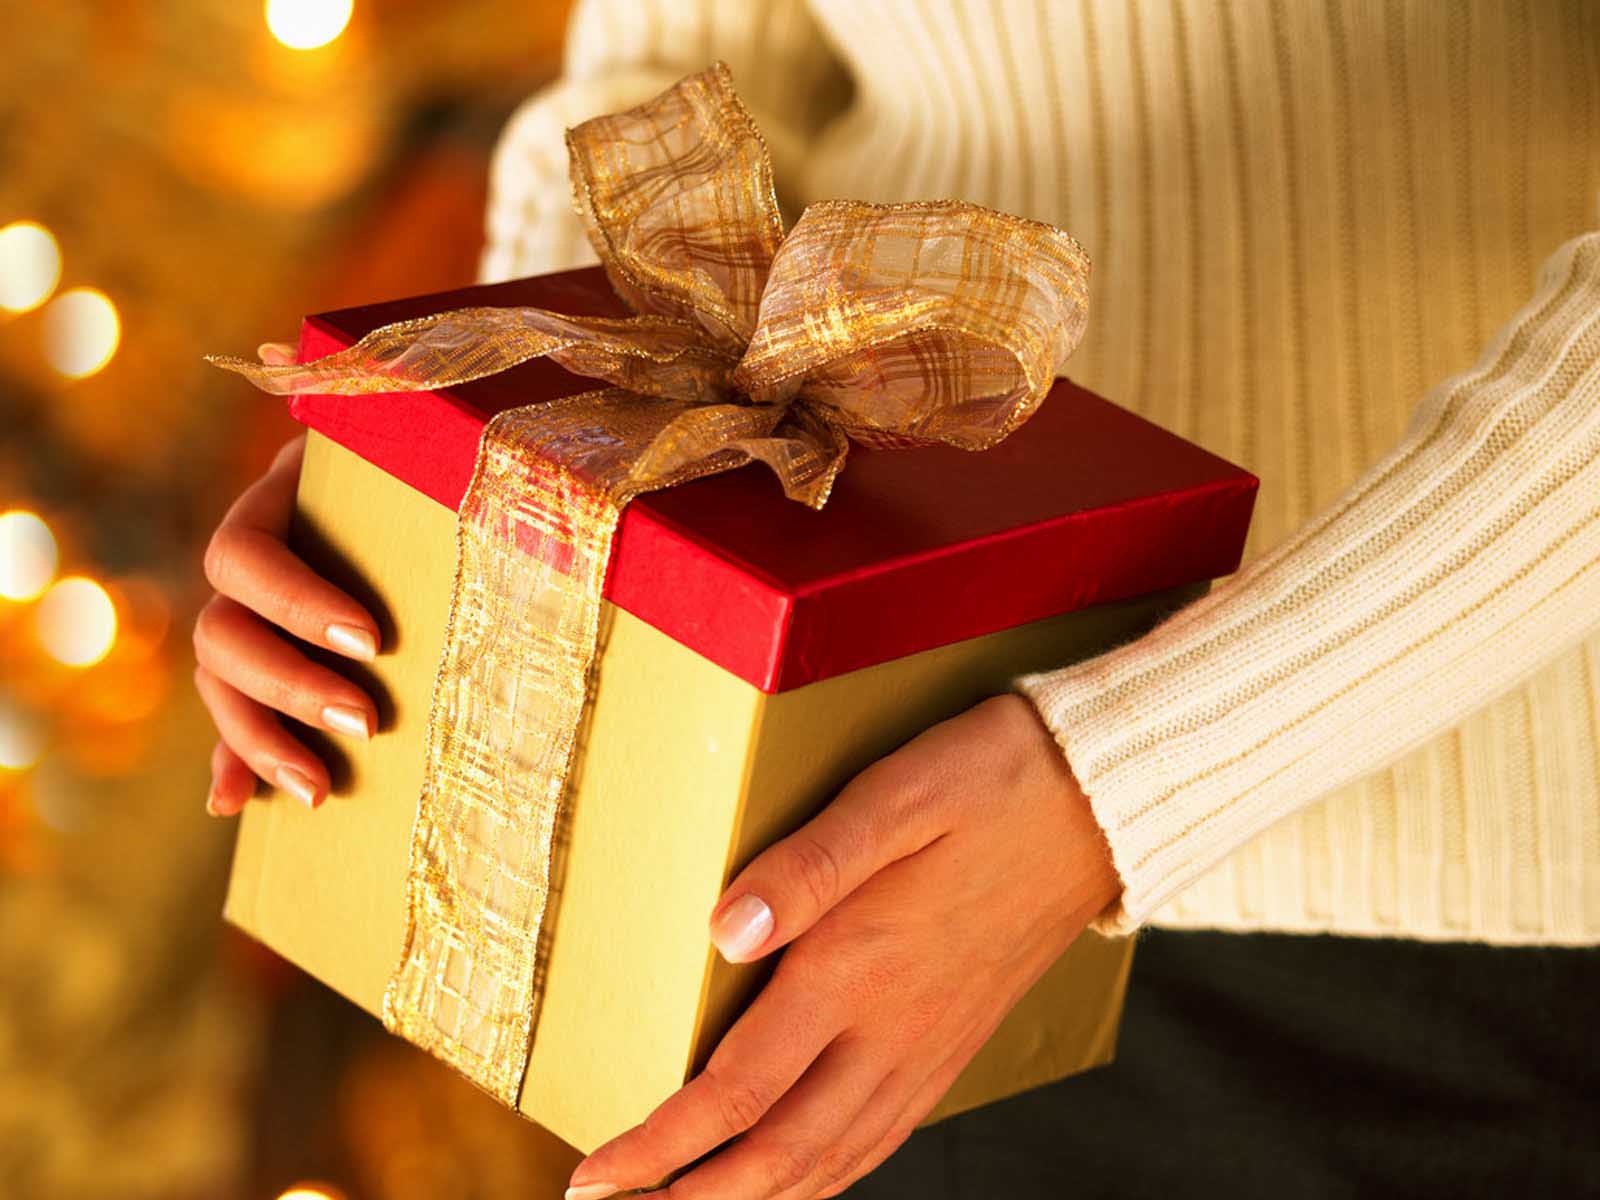  Piu’ di un italiano su tre ricicla i regali indesiderati scartati sotto l’albero di Natale